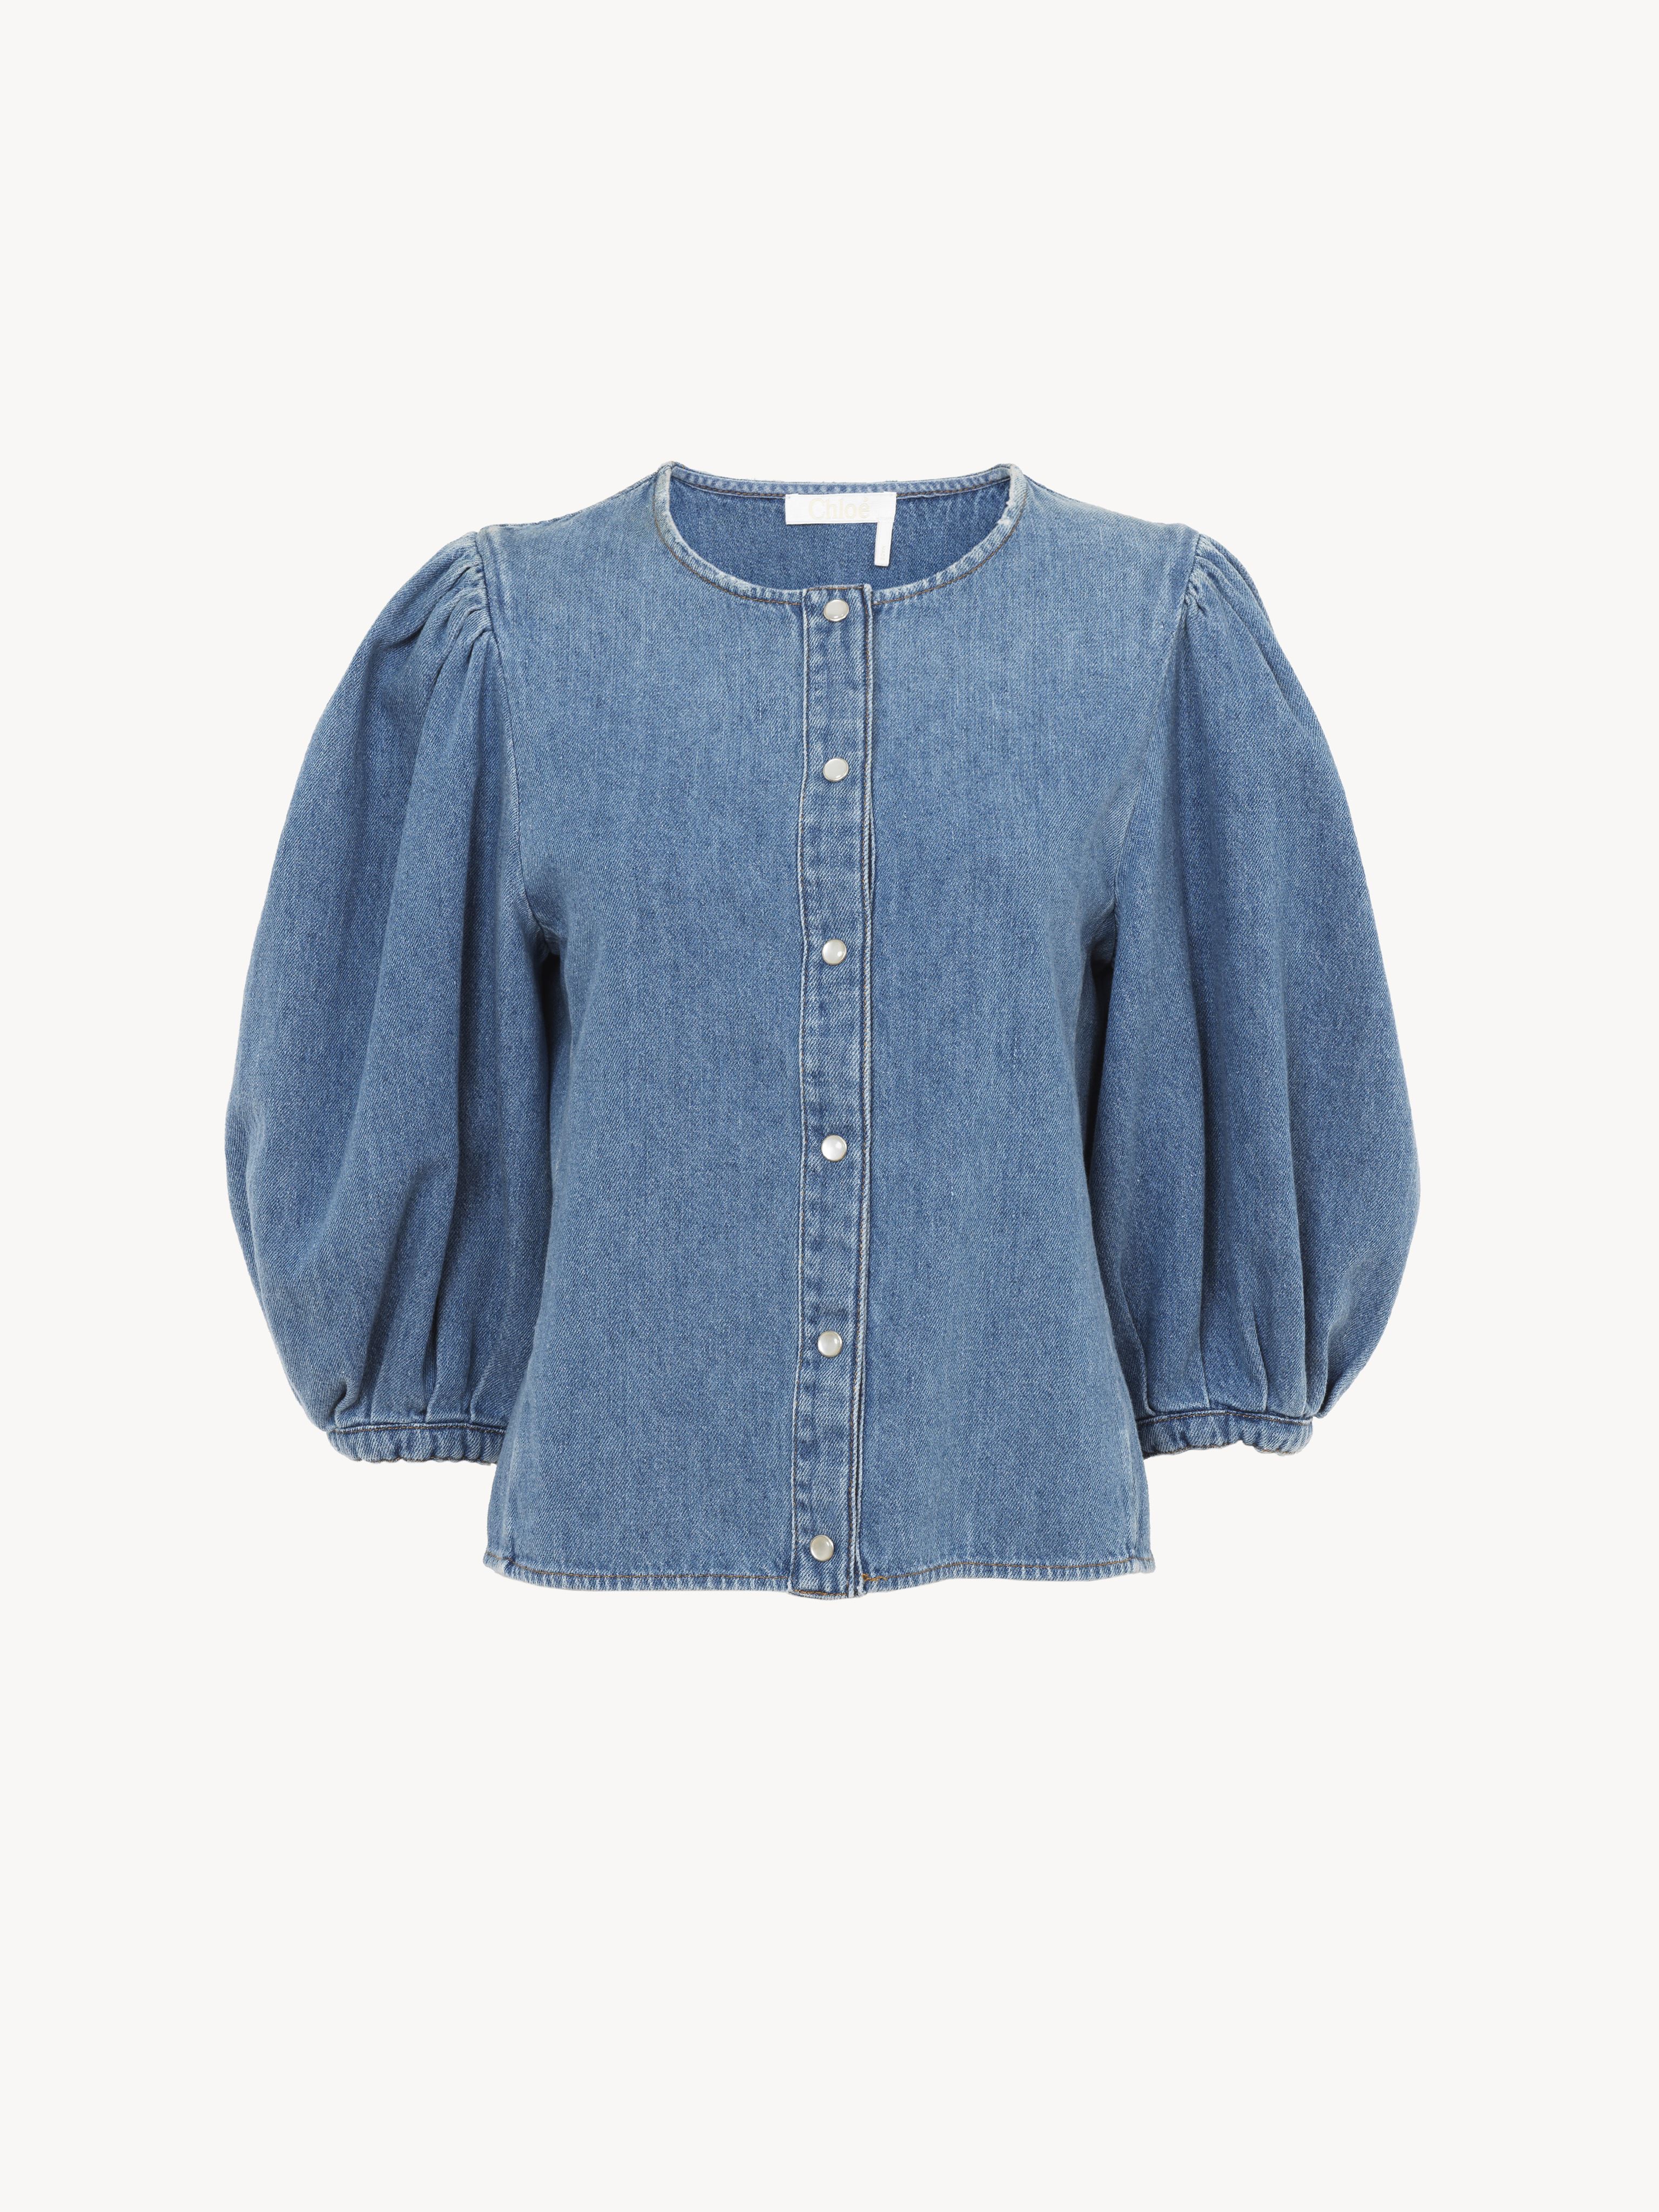 Shop Chloé Collarless Blouse Blue Size 12 80% Cotton, 20% Linen